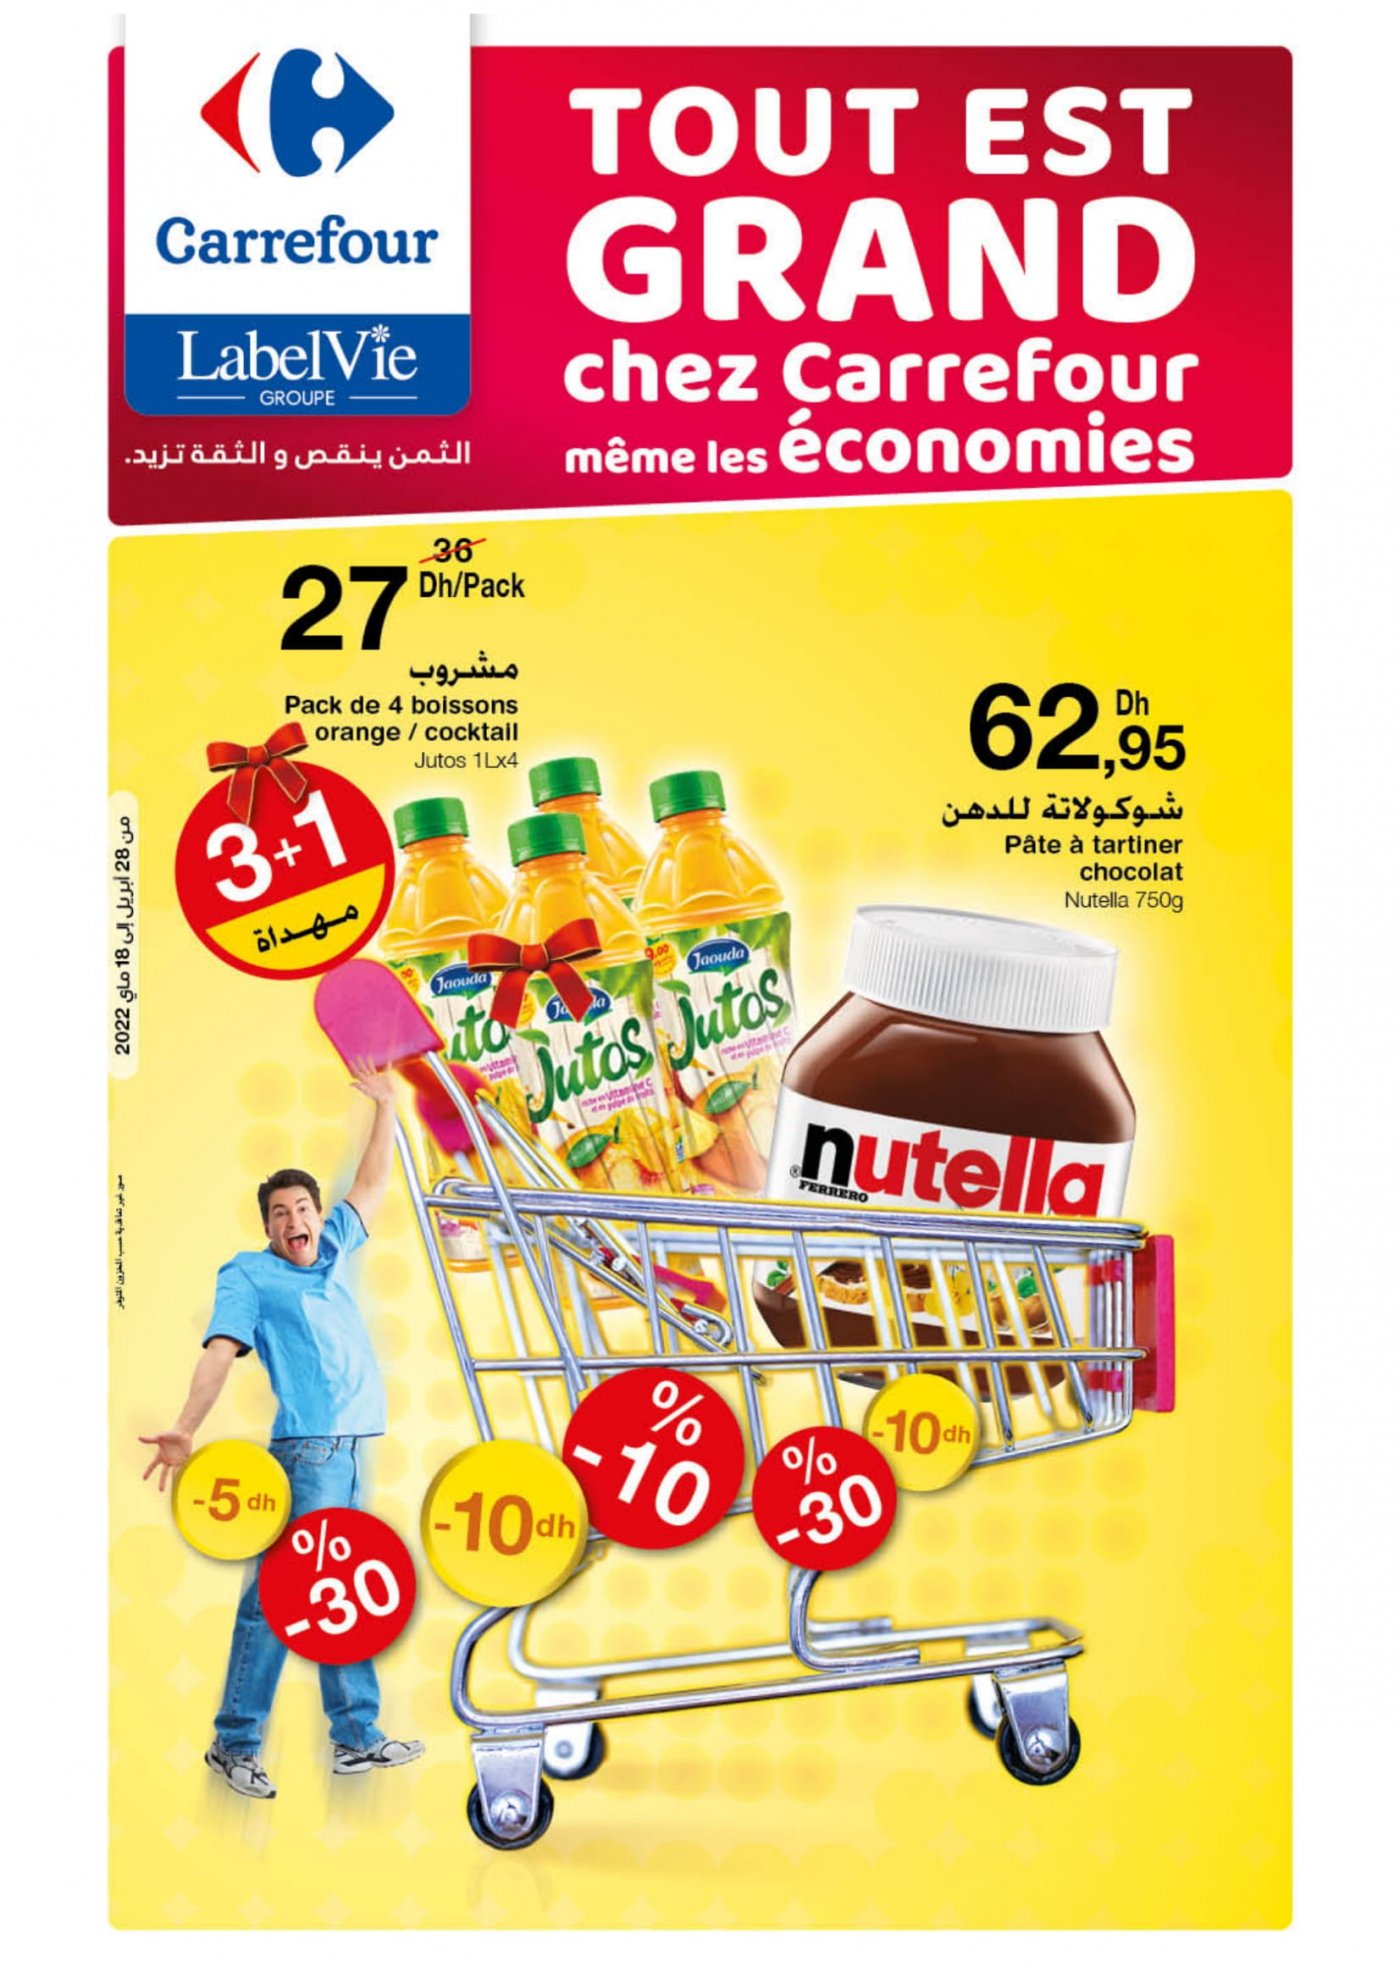 Catalogue Carrefour Mai 2022 spécial Grandes économies juillet 2022